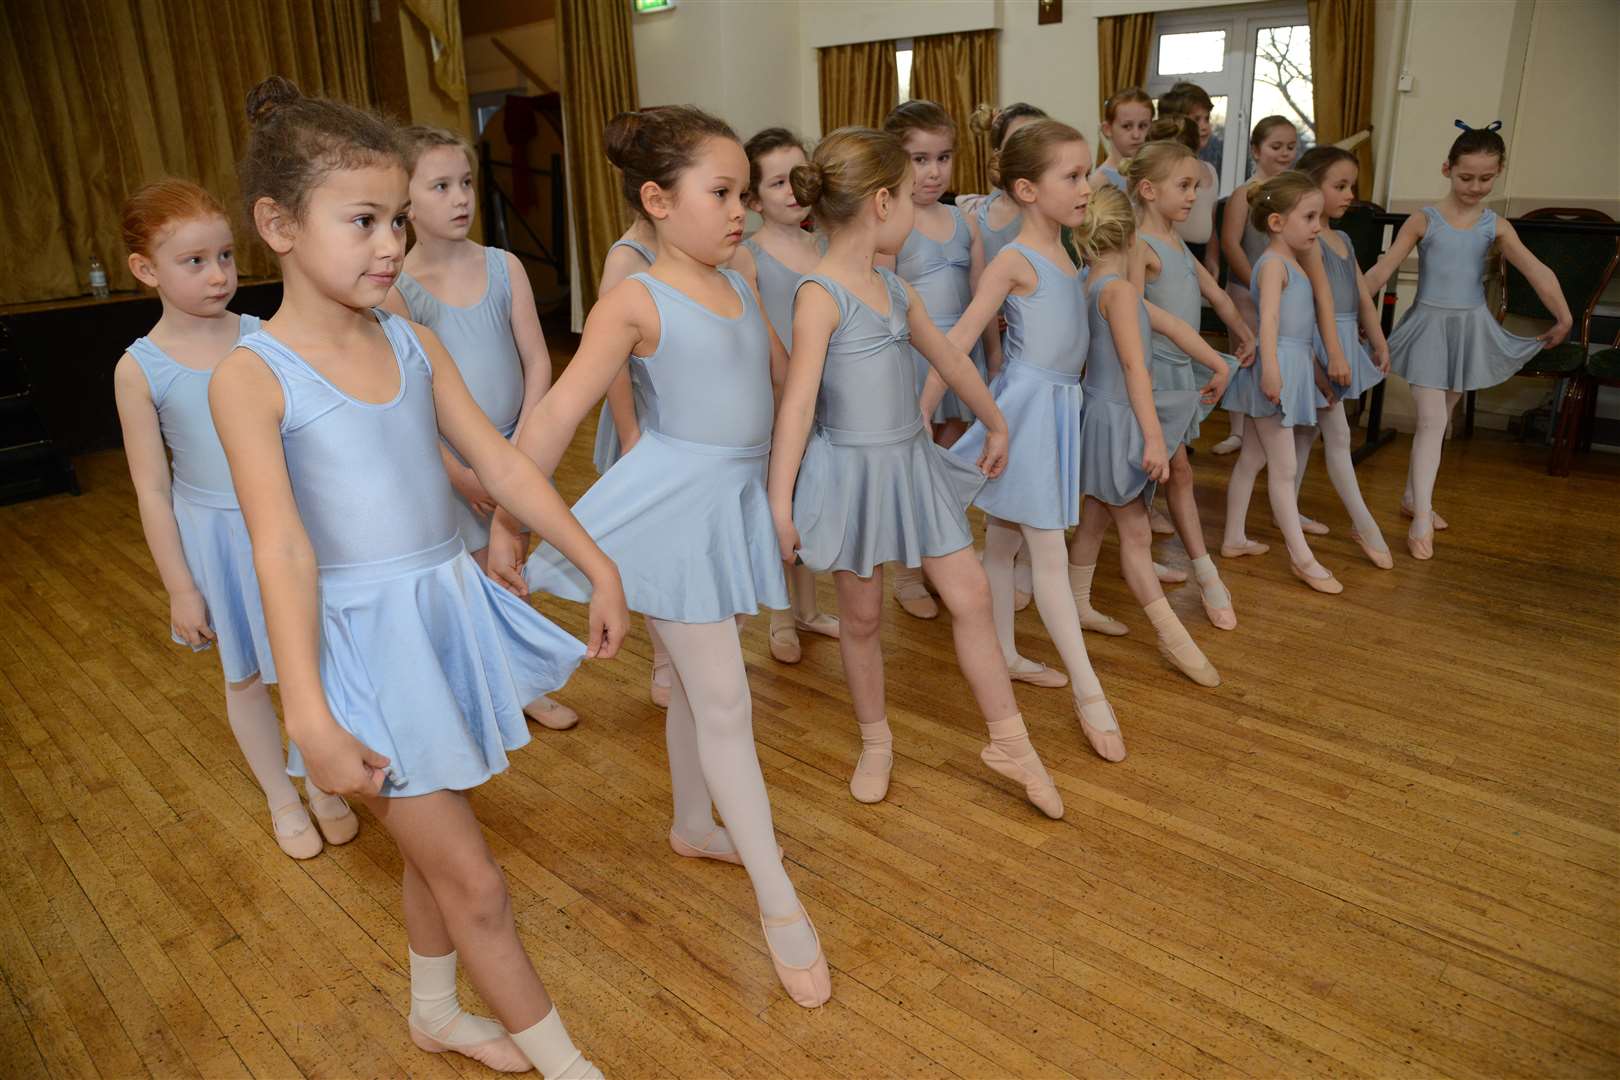 Members of the Tenterden Ballet Studio in action